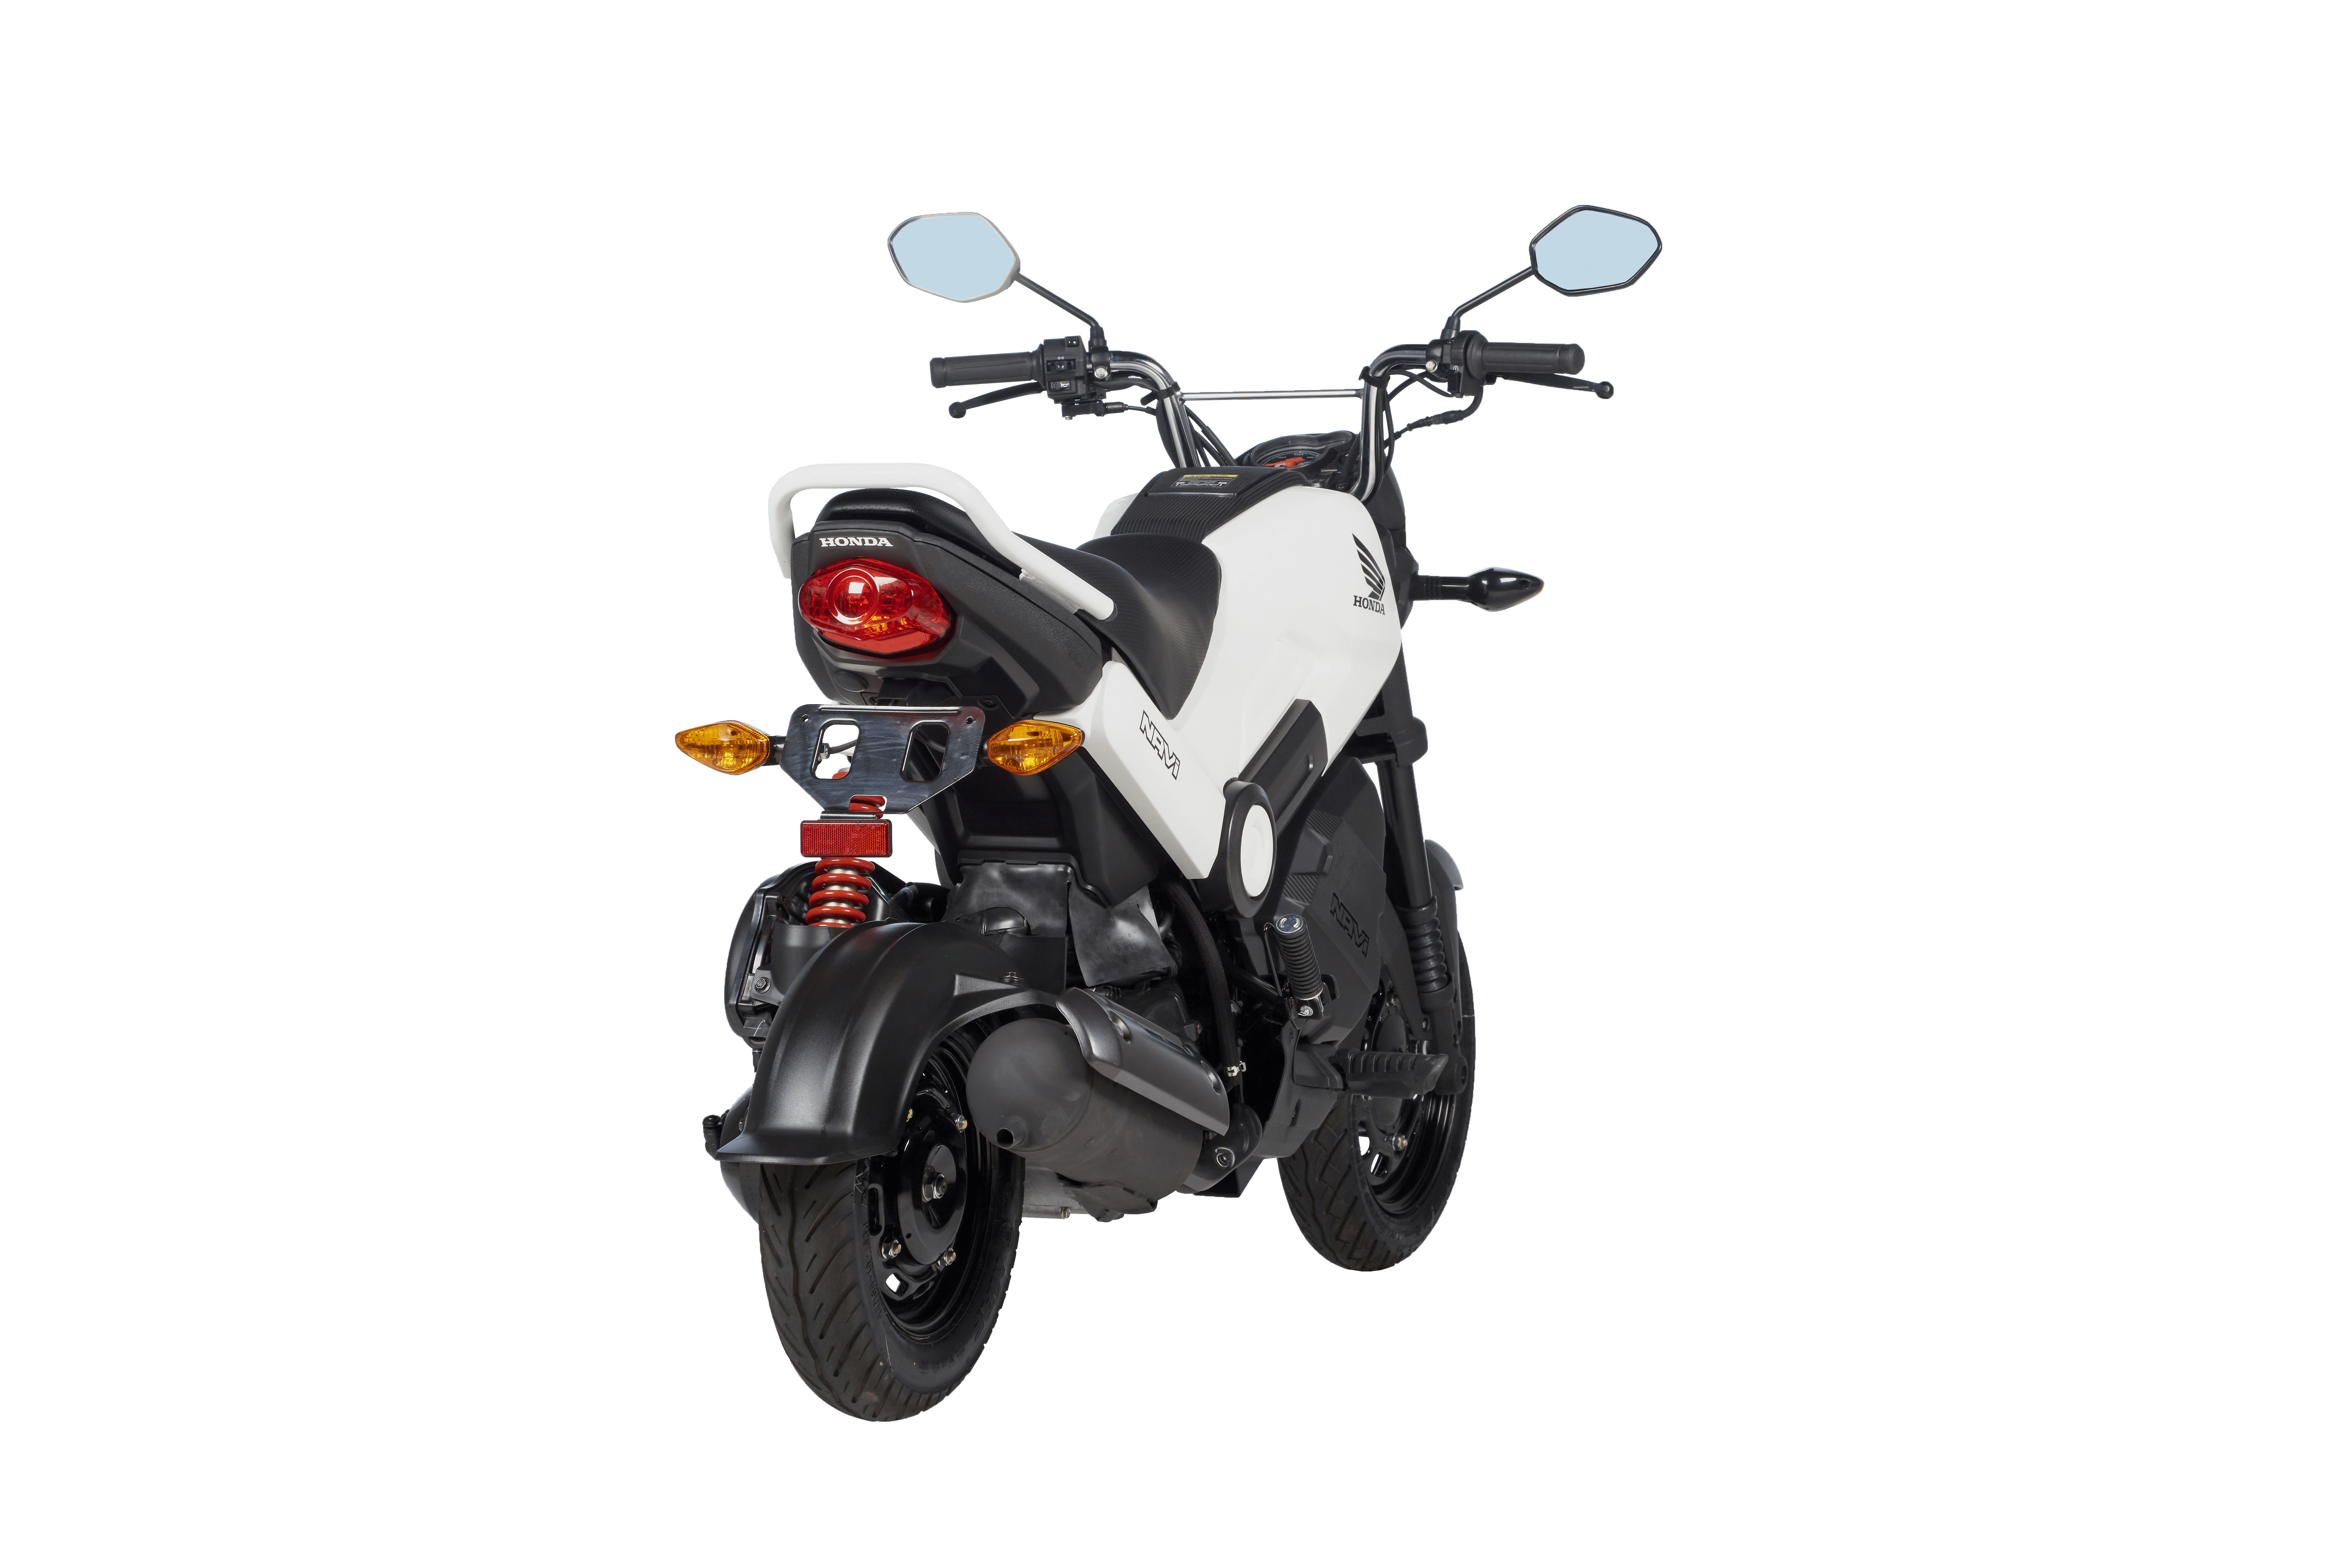 Navi 110 21 Motos Honda Precio 1 299 Somos Moto Peru